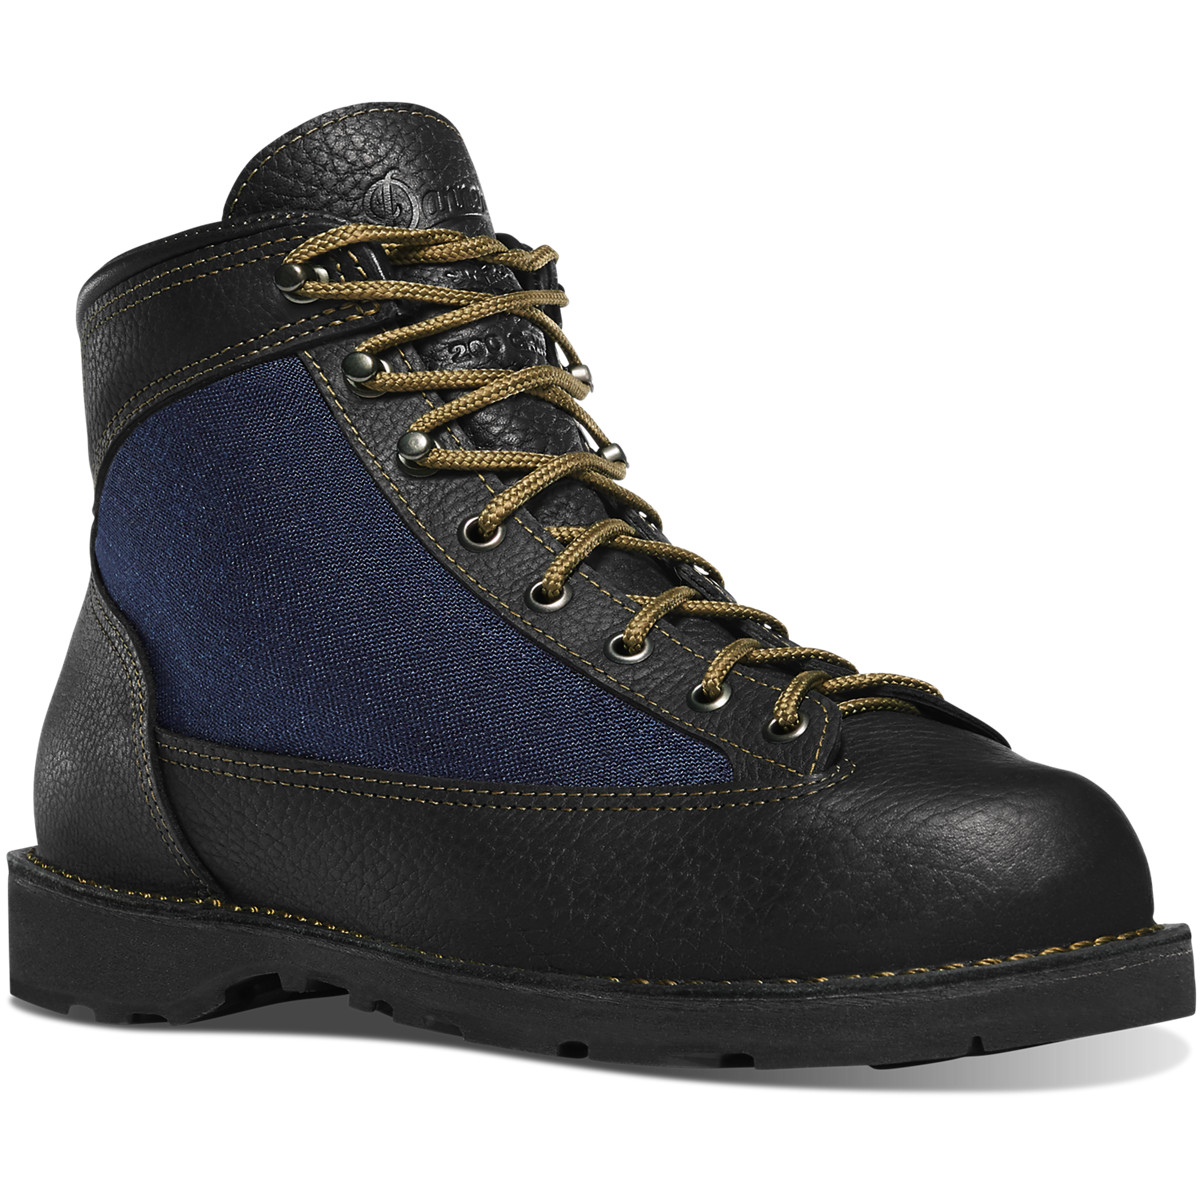 Danner Mens Ridge 200G Hiking Boots Black/Blue - ALJ563287